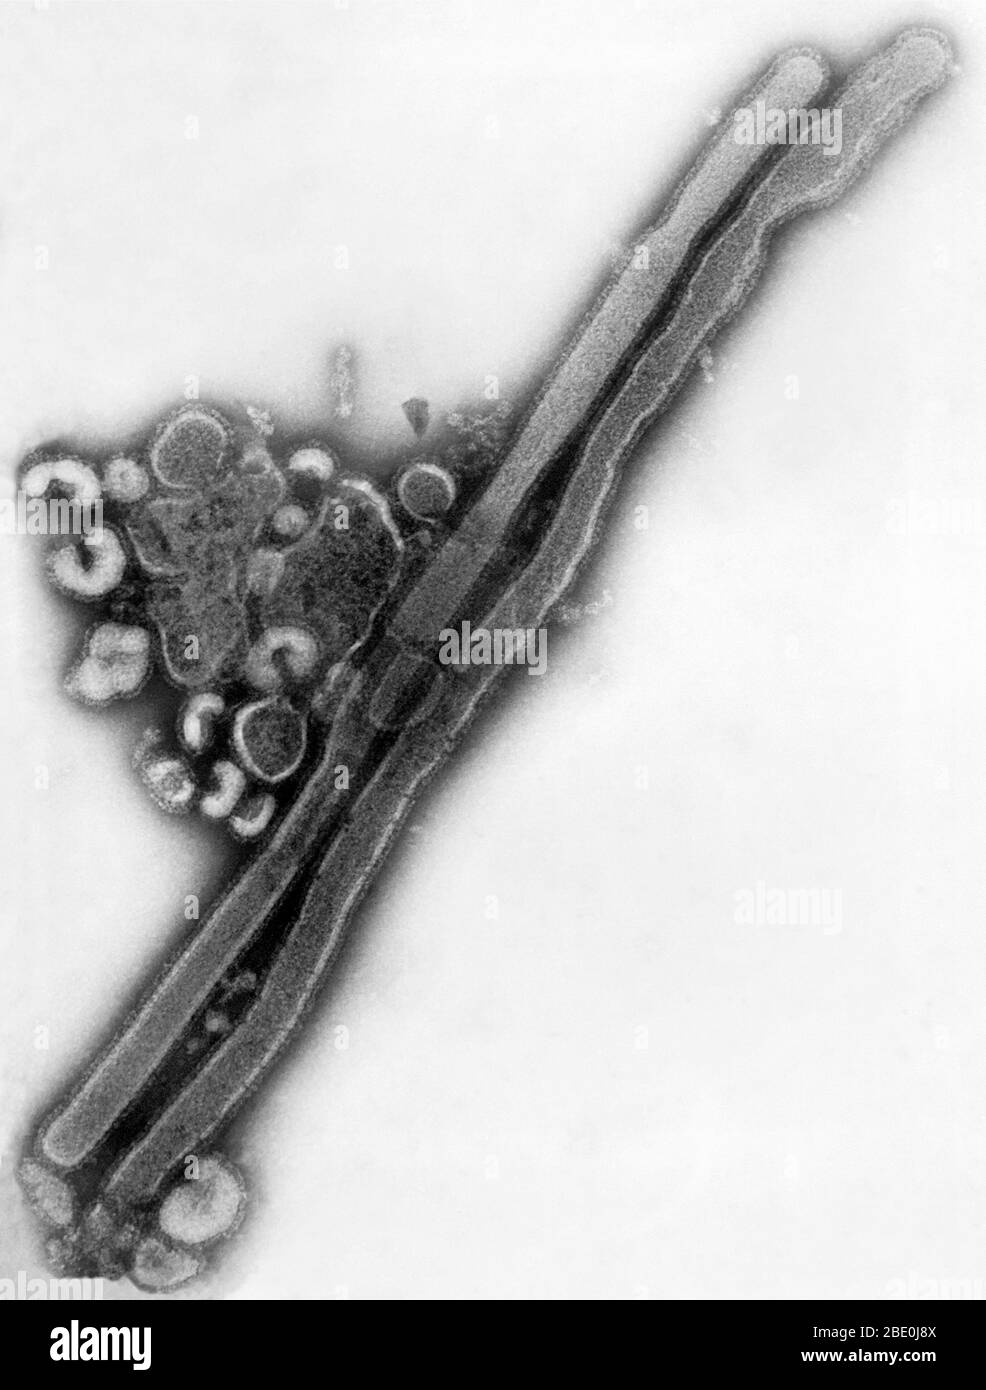 Negativ gefärbte Transmission Electron Microscopic (TEM)-Aufnahme zeigte das Vorhandensein einer Reihe von Influenza-Virus-Virionen. Dieses Virus ist ein Familienmitglied des Orthomyxoviridae-Virus. Die Orthoomyxoviren sind eine Familie von RNA-Viren, die sieben Gattungen umfasst: Influenza-Virus A, Influenza-Virus B, Influenza-Virus C, Influenza-Virus D, Isavirus, Thogotovirus und Quaranjavirus. Die ersten drei Gattungen enthalten Viren, die bei Wirbeltieren, einschließlich Vögeln (siehe auch Vogelgrippe), Menschen und anderen Säugetieren, eine Influenza verursachen. Influenza A- und B-Viren verursachen saisonale Seuchenepidemien fast jedes wi Stockfoto